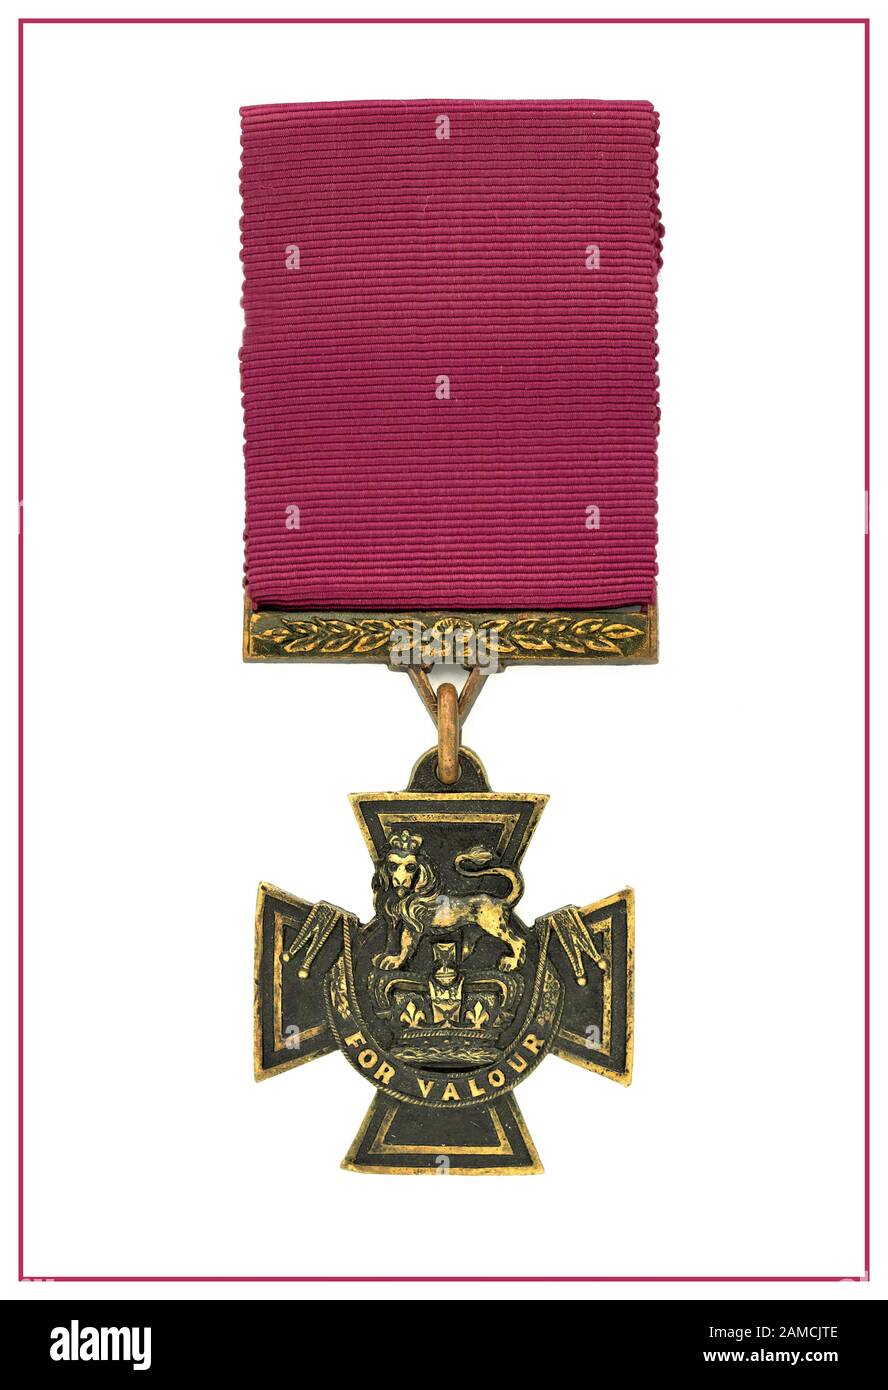 Victoria Cross Medal für die auffällige Kühnheit verliehen. Die höchste militärische Auszeichnung Großbritanniens für den Kampf gegen den Feind. Das Victoria Cross (VC) ist die höchste und prestigeträchtigste Auszeichnung des britischen Ehrensystems, auffälligste Tapferkeit oder eine gewagte oder herausragende Tat von Tapferkeit oder Selbstaufopferung oder extremer Hingabe zur Pflicht in Gegenwart des Feindes. Stockfoto